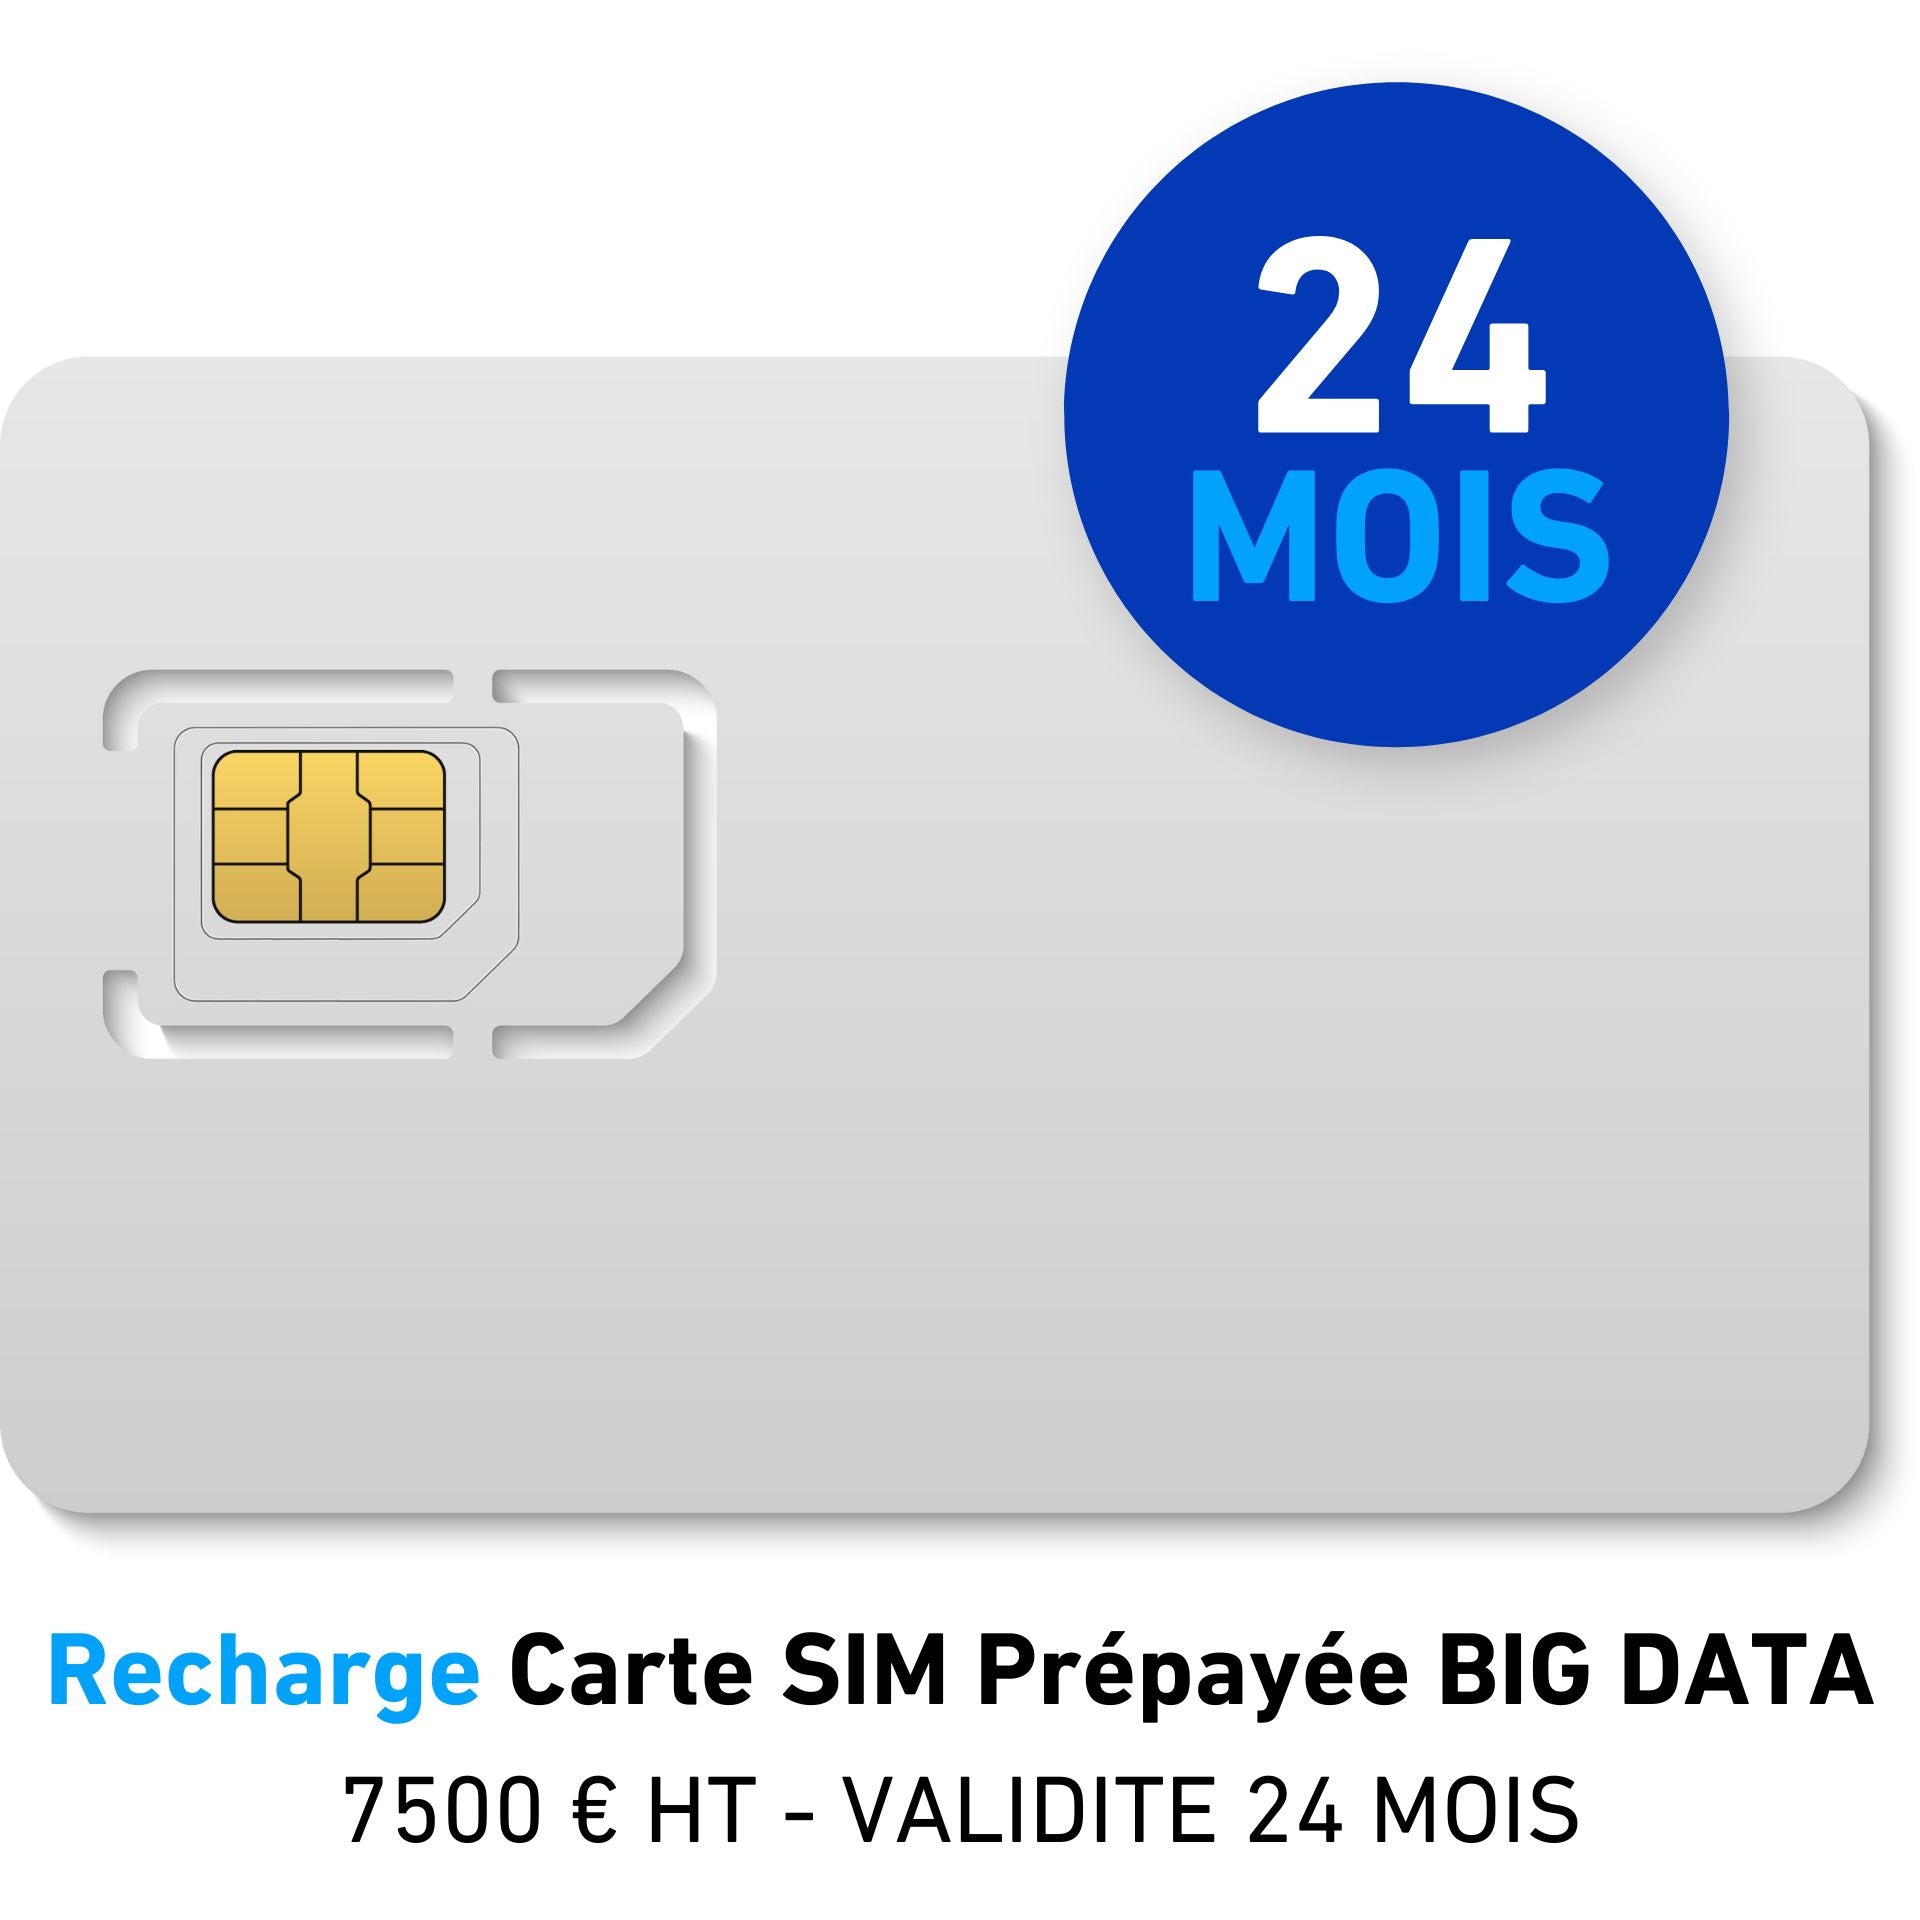 Recharge Carte SIM Prépayée BIG DATA 7500 € HT - VALIDITE 24 MOIS